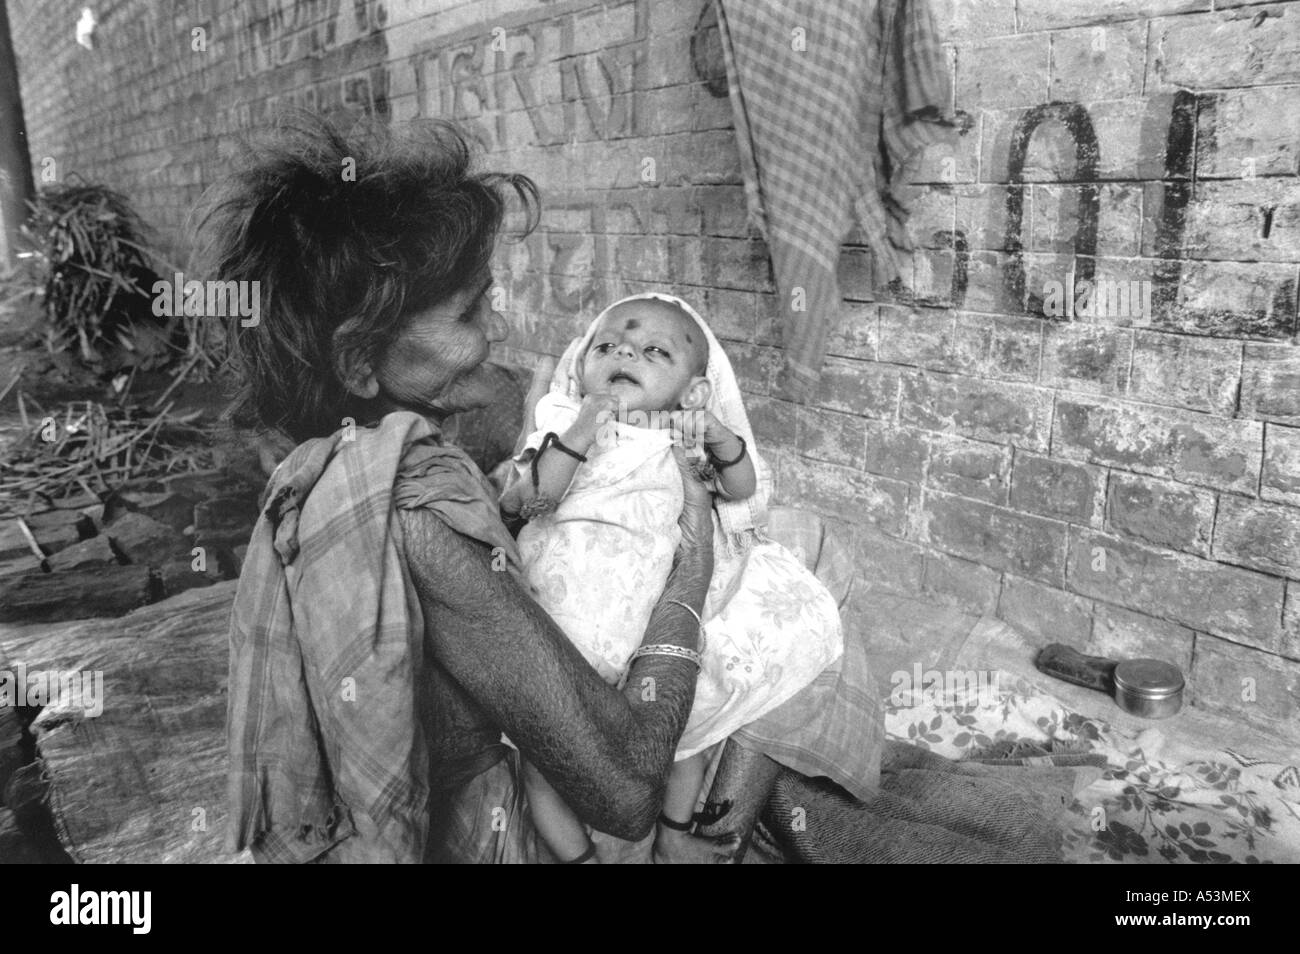 Painet ha1404 229 in bianco e nero la povertà senzatetto donna bambino stazione ferroviaria di Howrah calcutta india paese in via di sviluppo Foto Stock